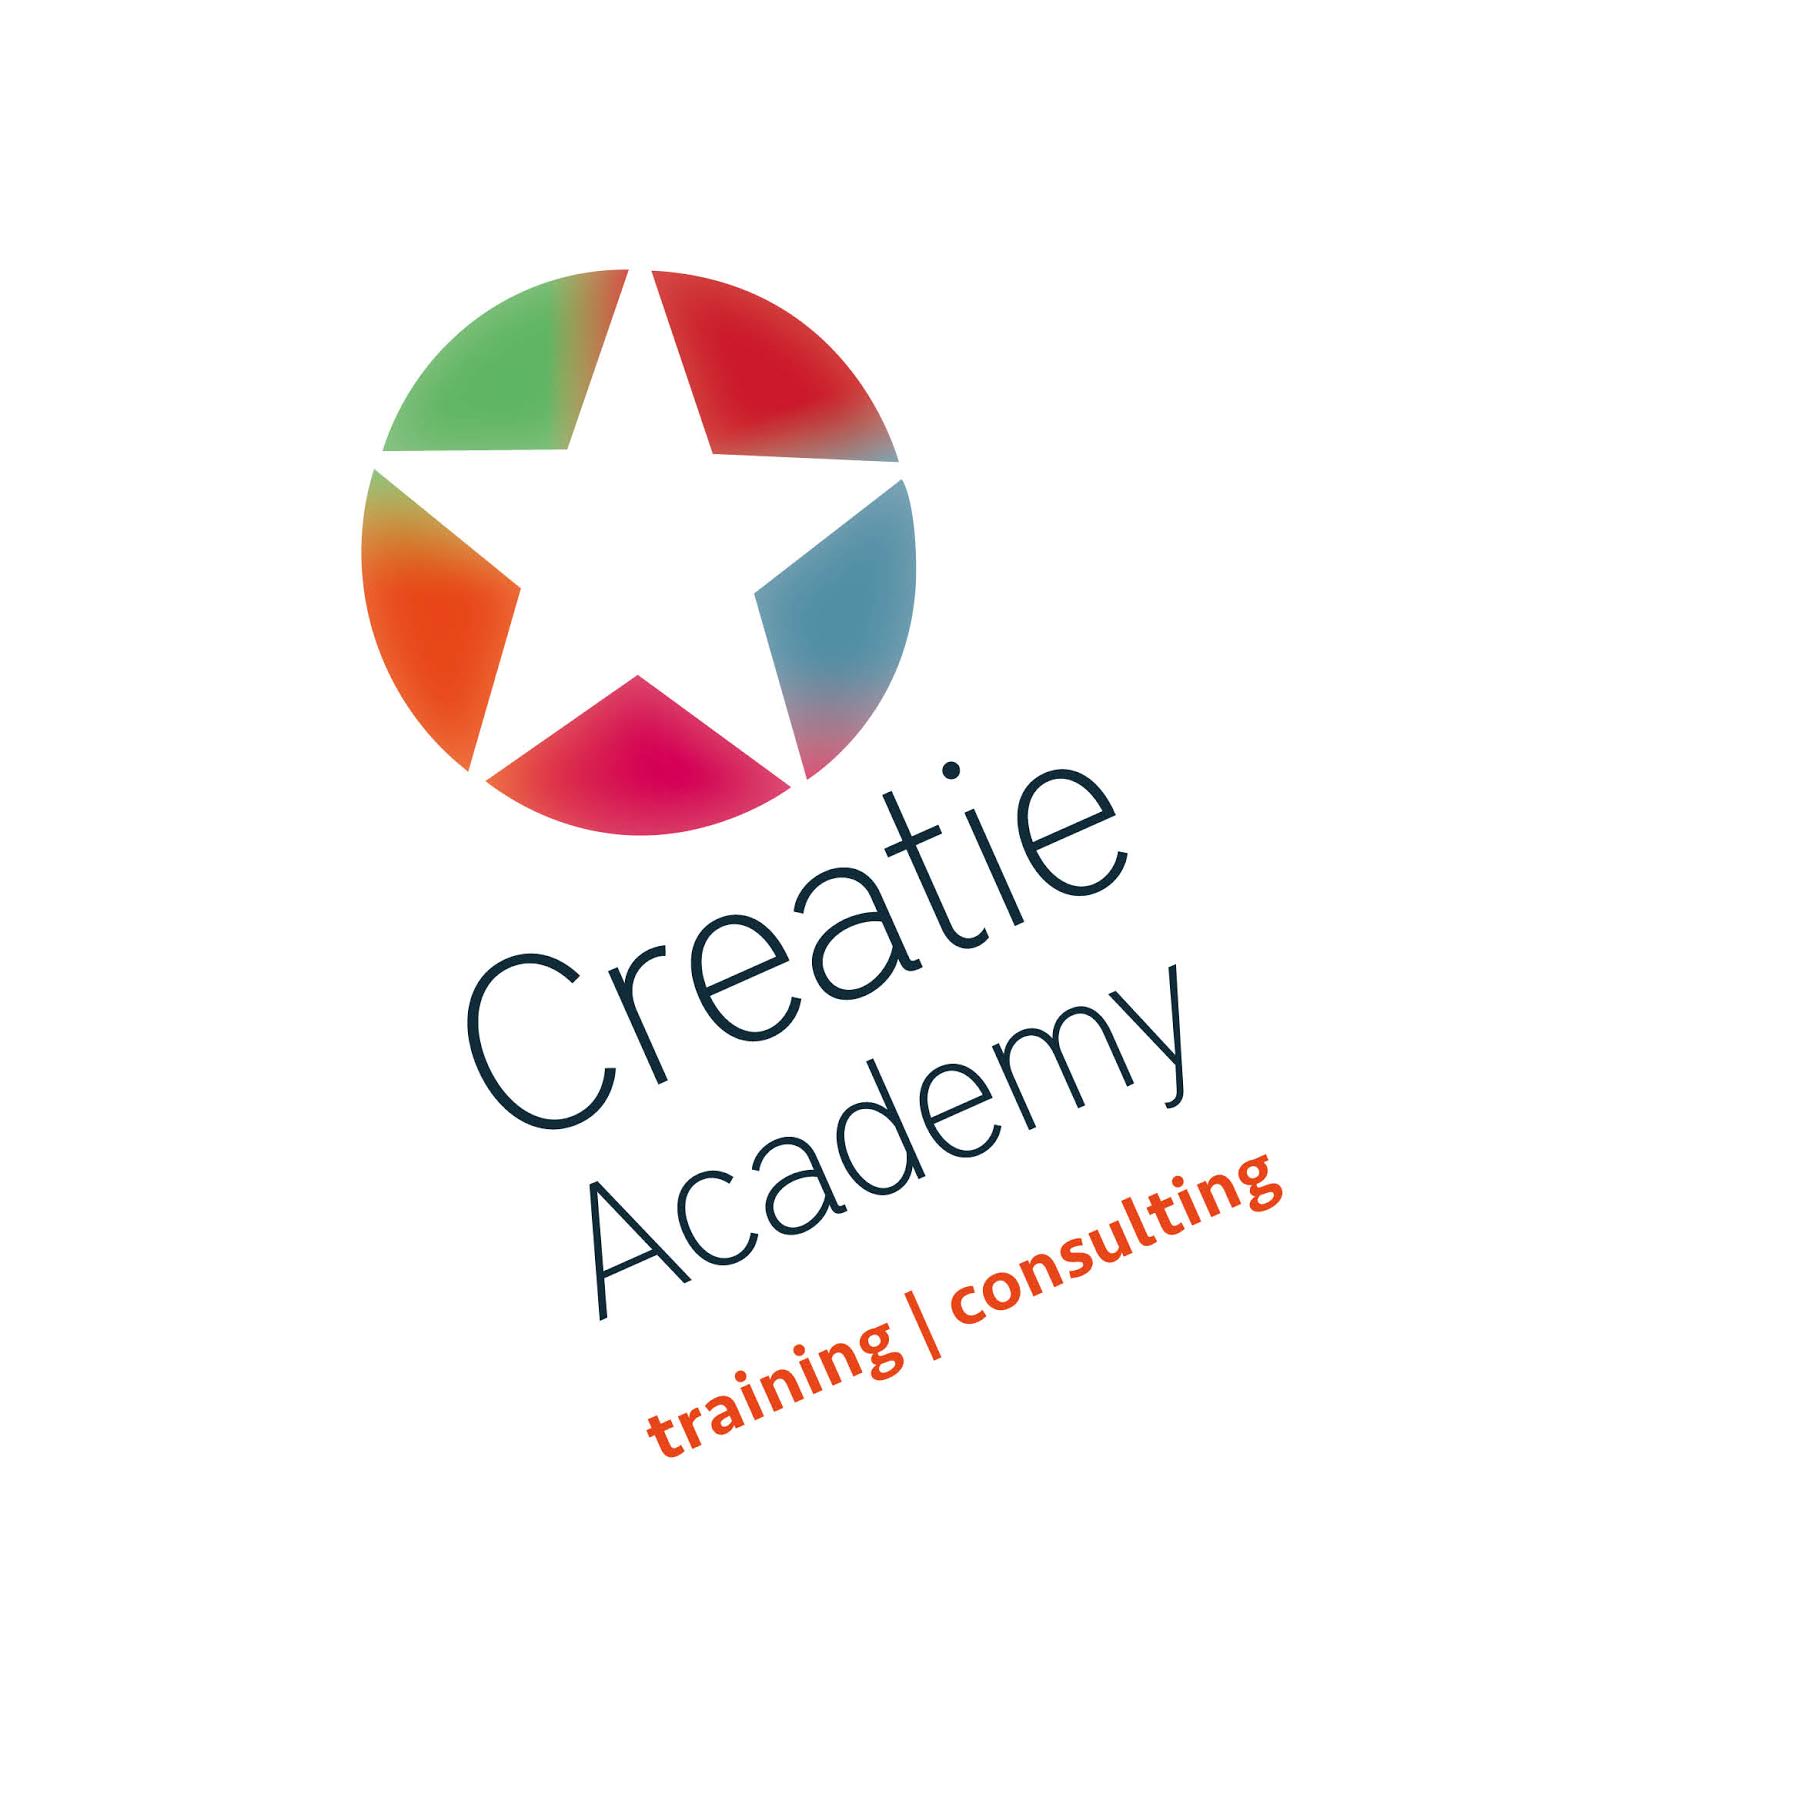 Creatie Academy